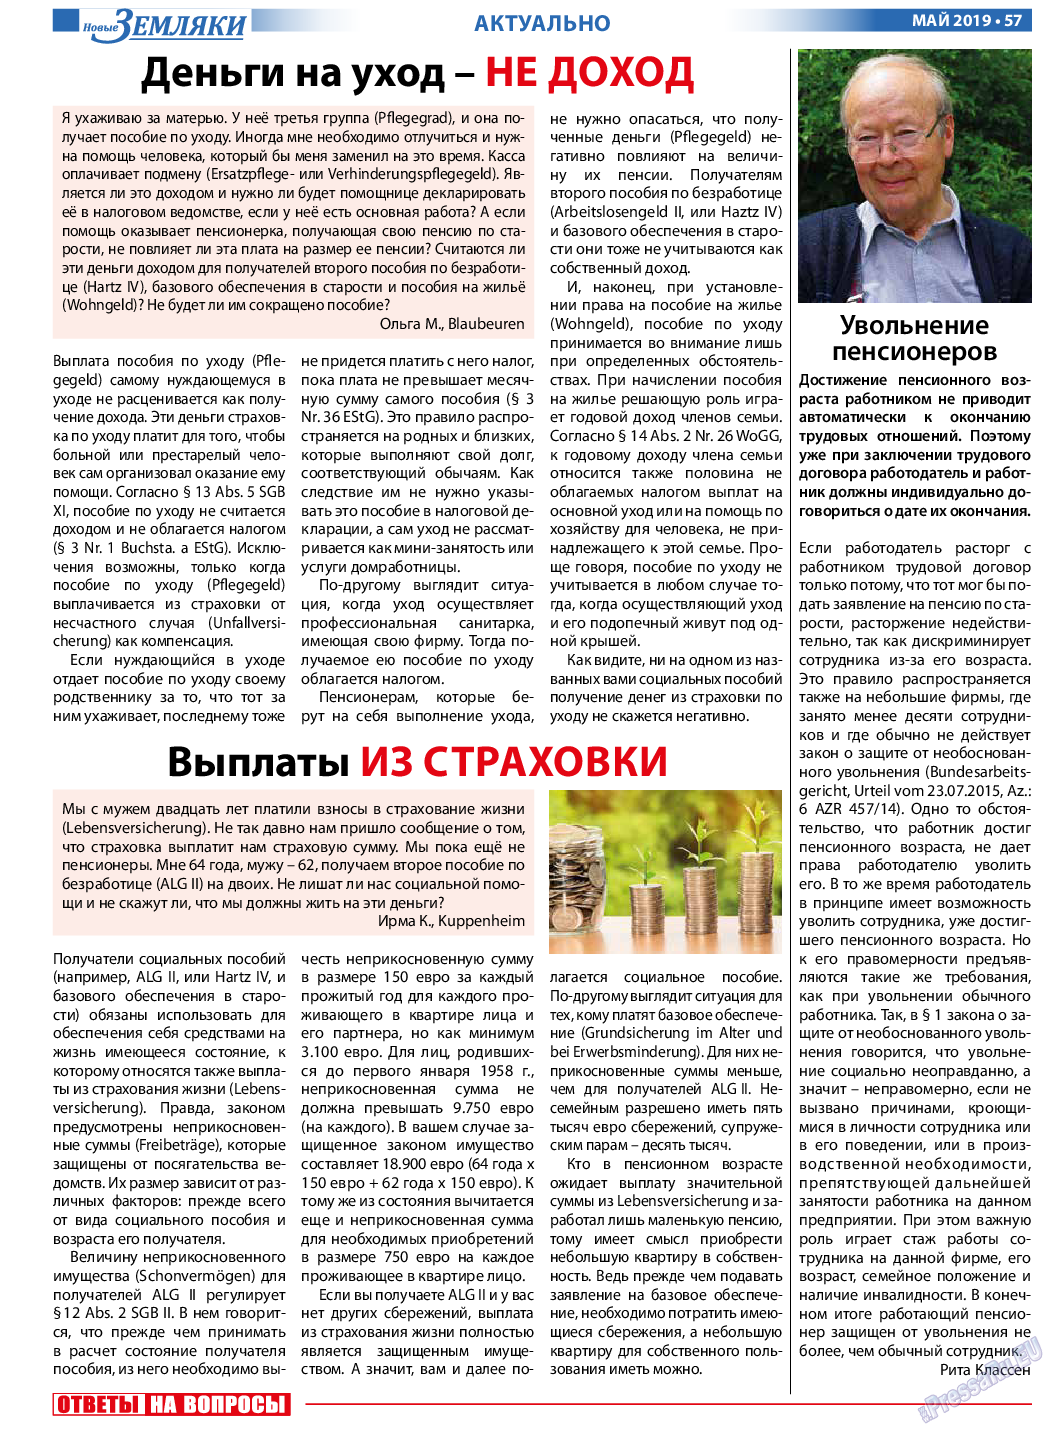 Новые Земляки (газета). 2019 год, номер 5, стр. 57